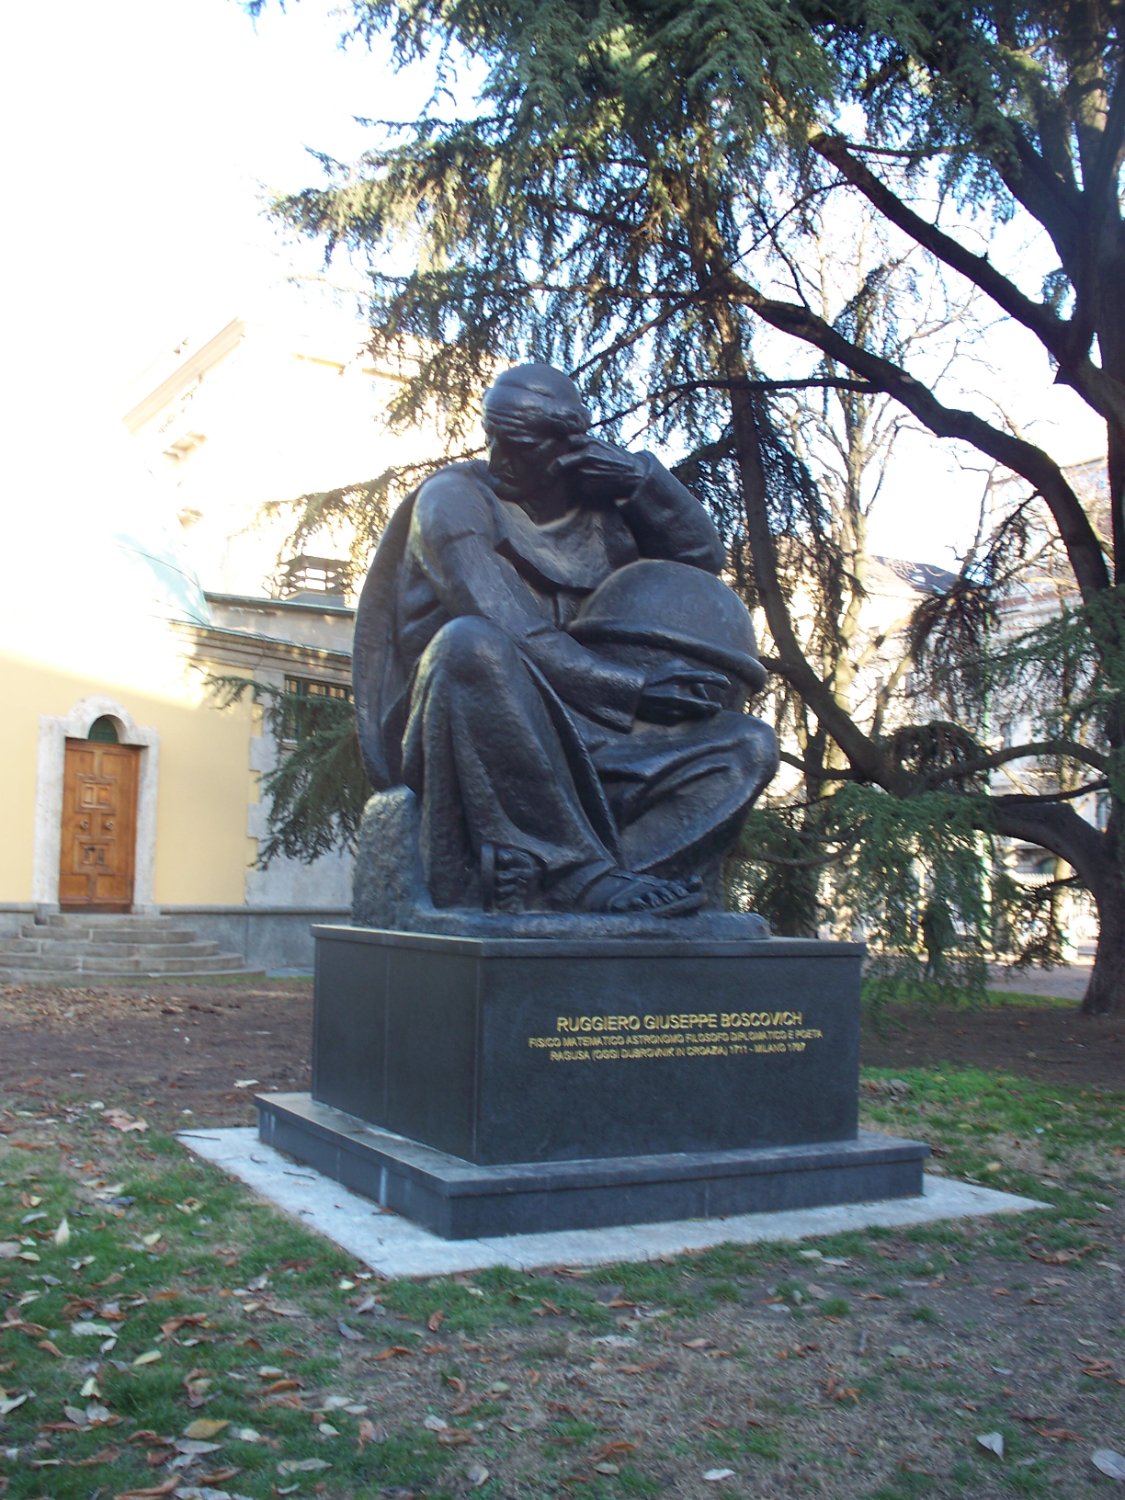 Monumento a Ruggero Boscovich